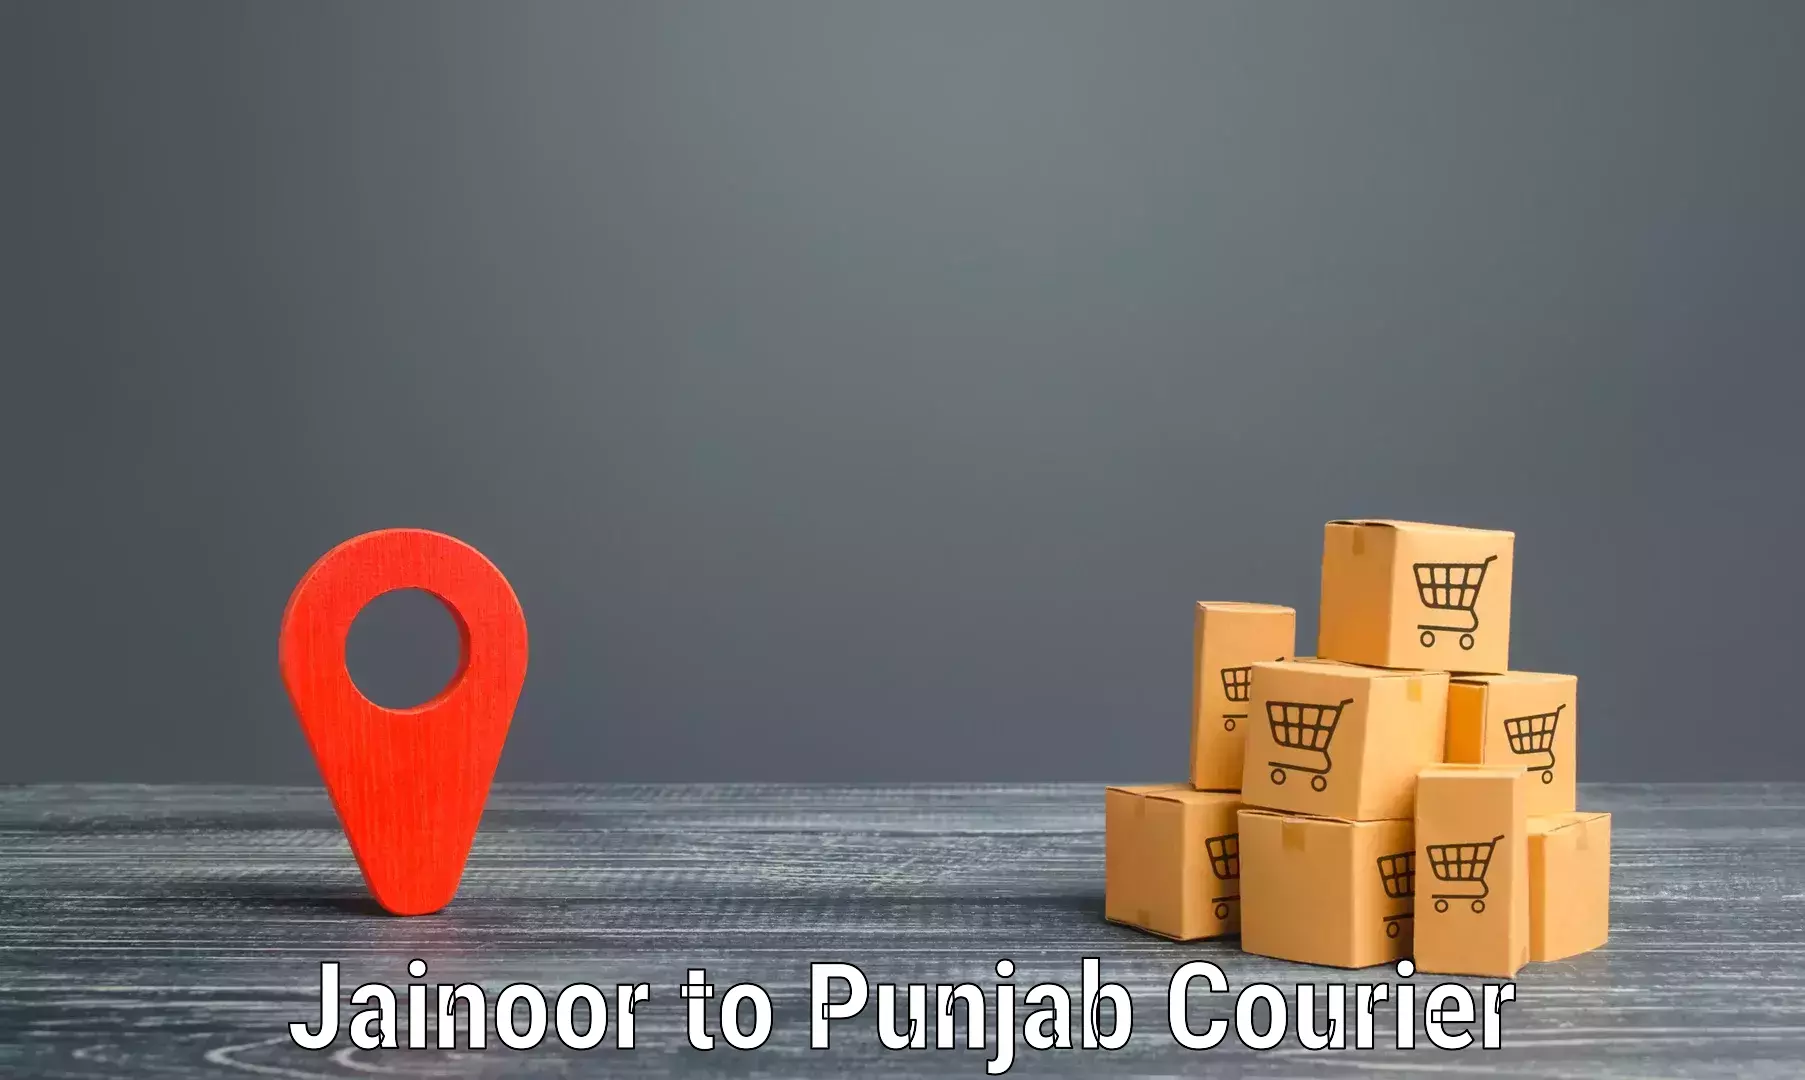 Professional parcel services Jainoor to Firozpur